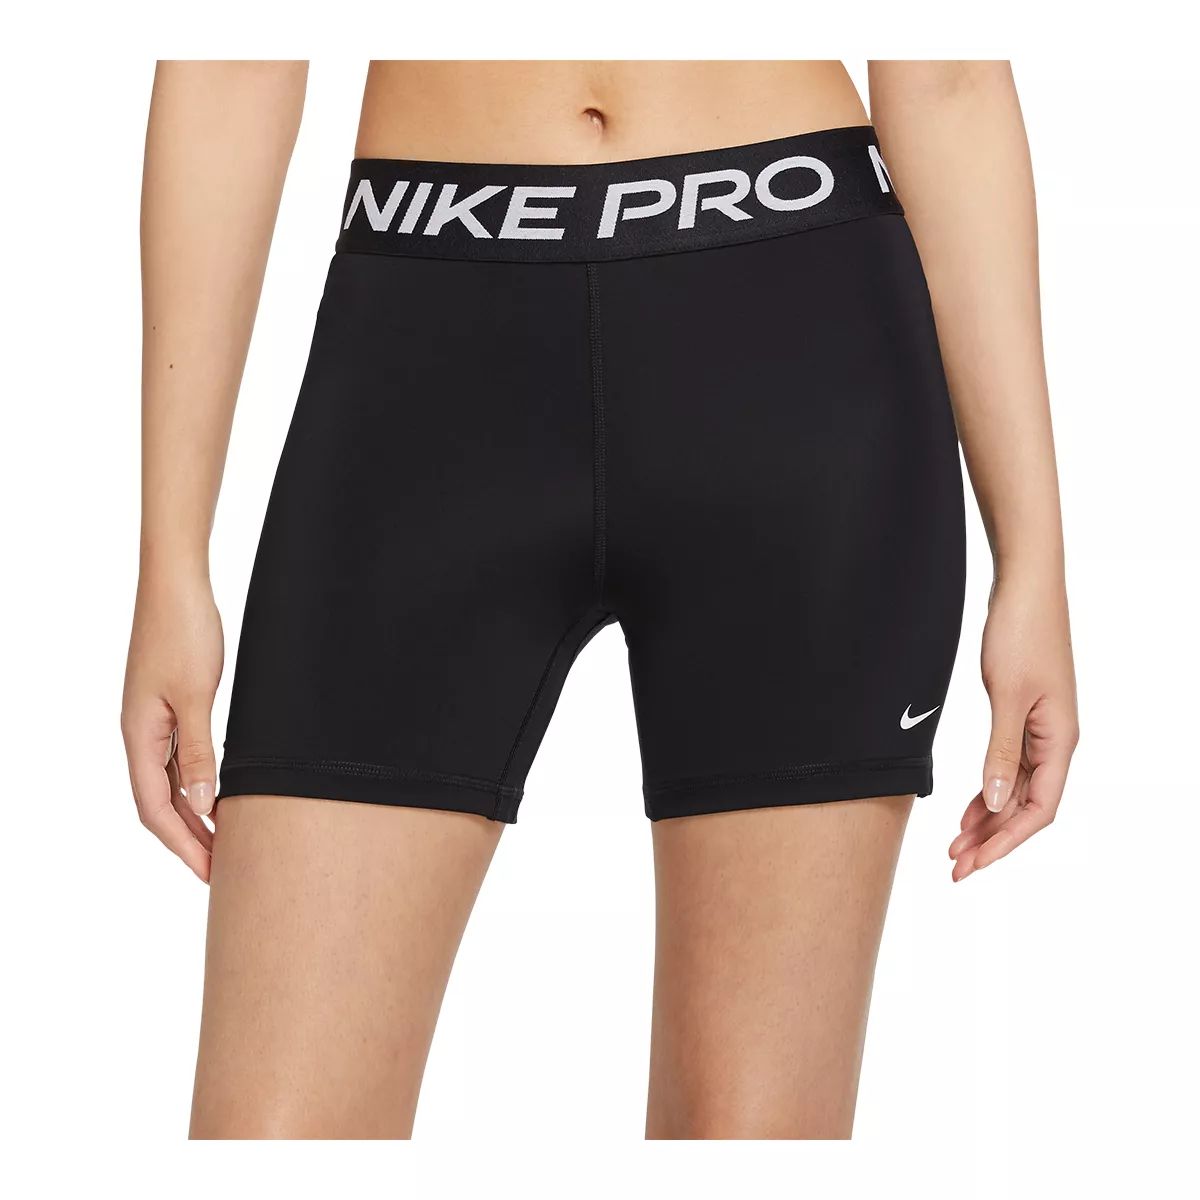 Nike Pro Women's 365 5 Inch Shorts